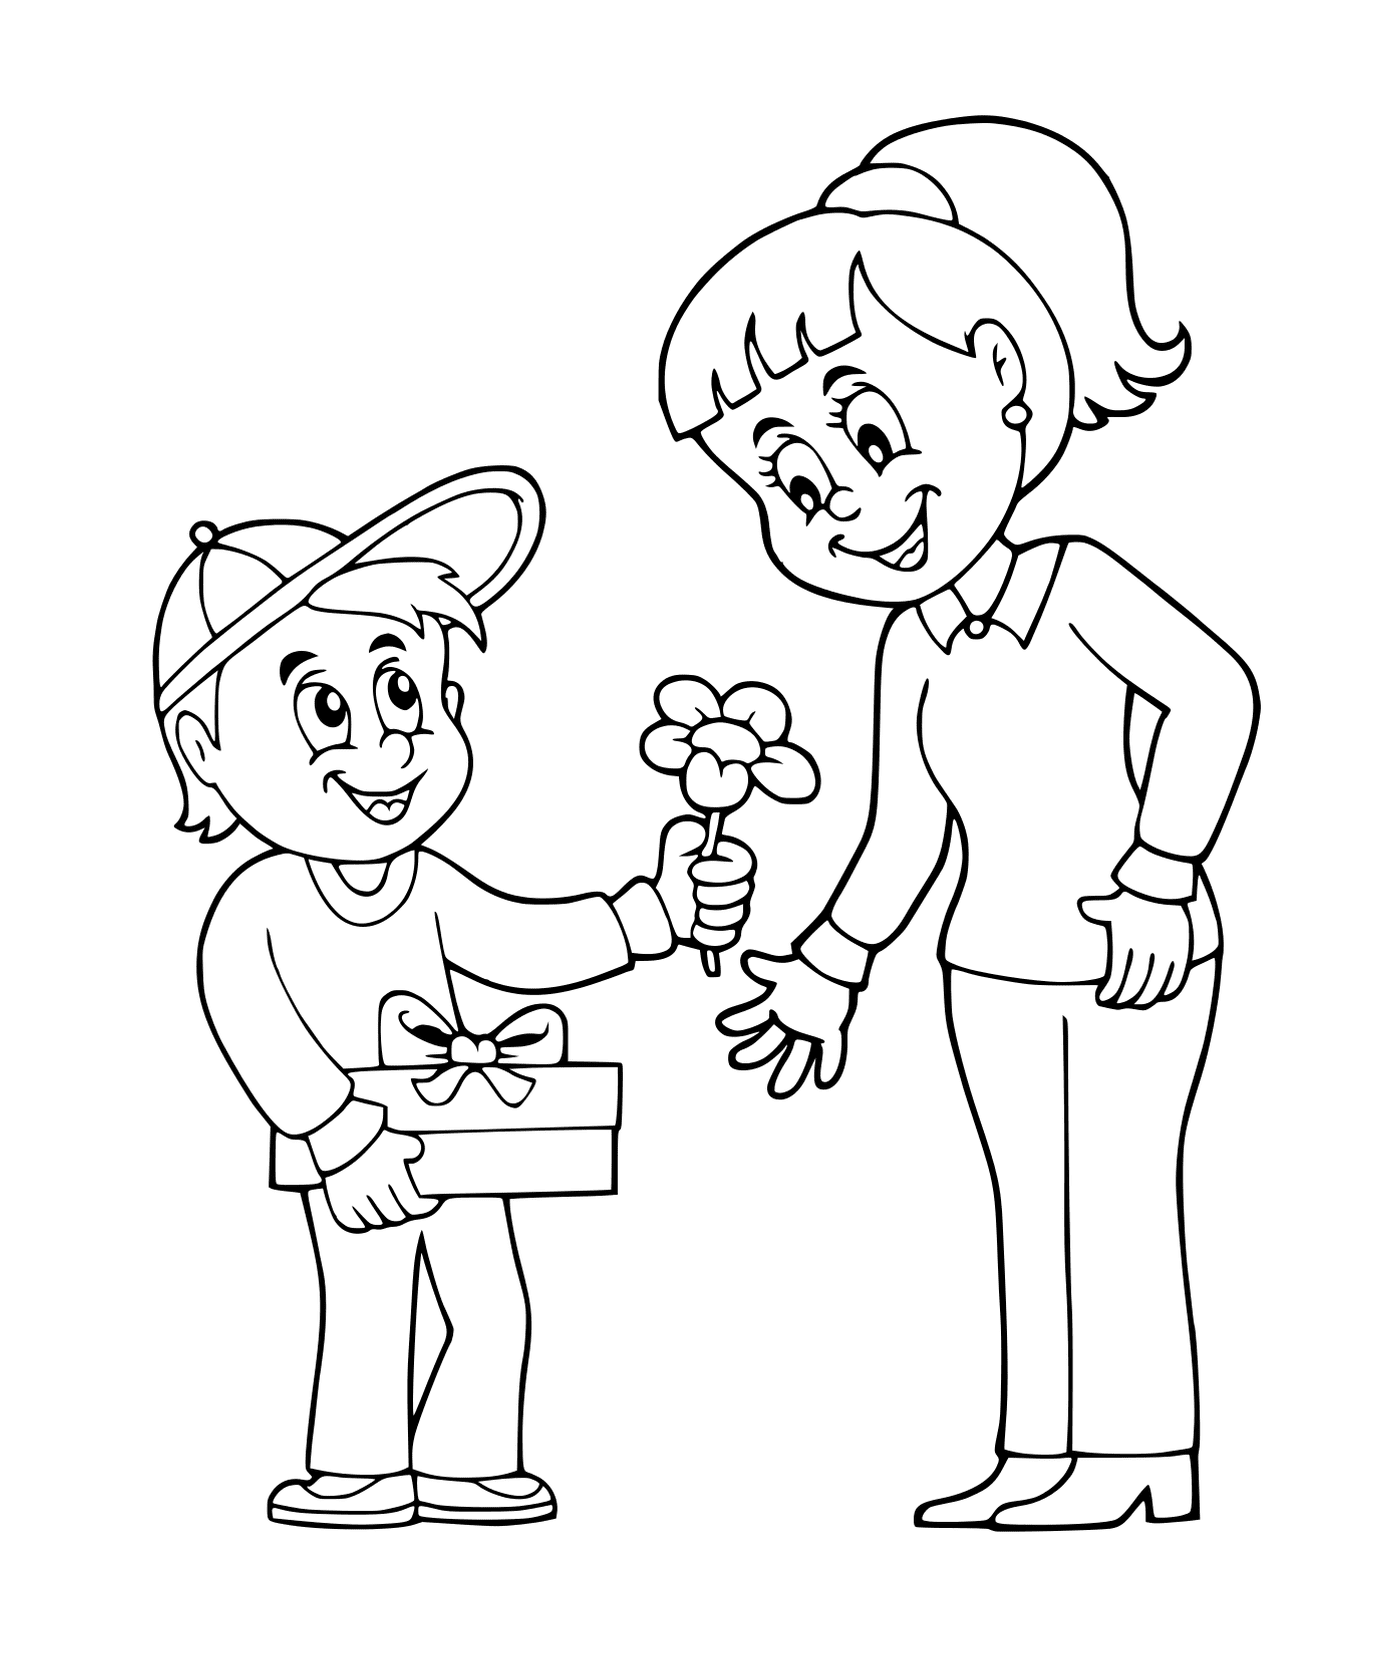  Un ragazzo che offre fiori ad una ragazza 